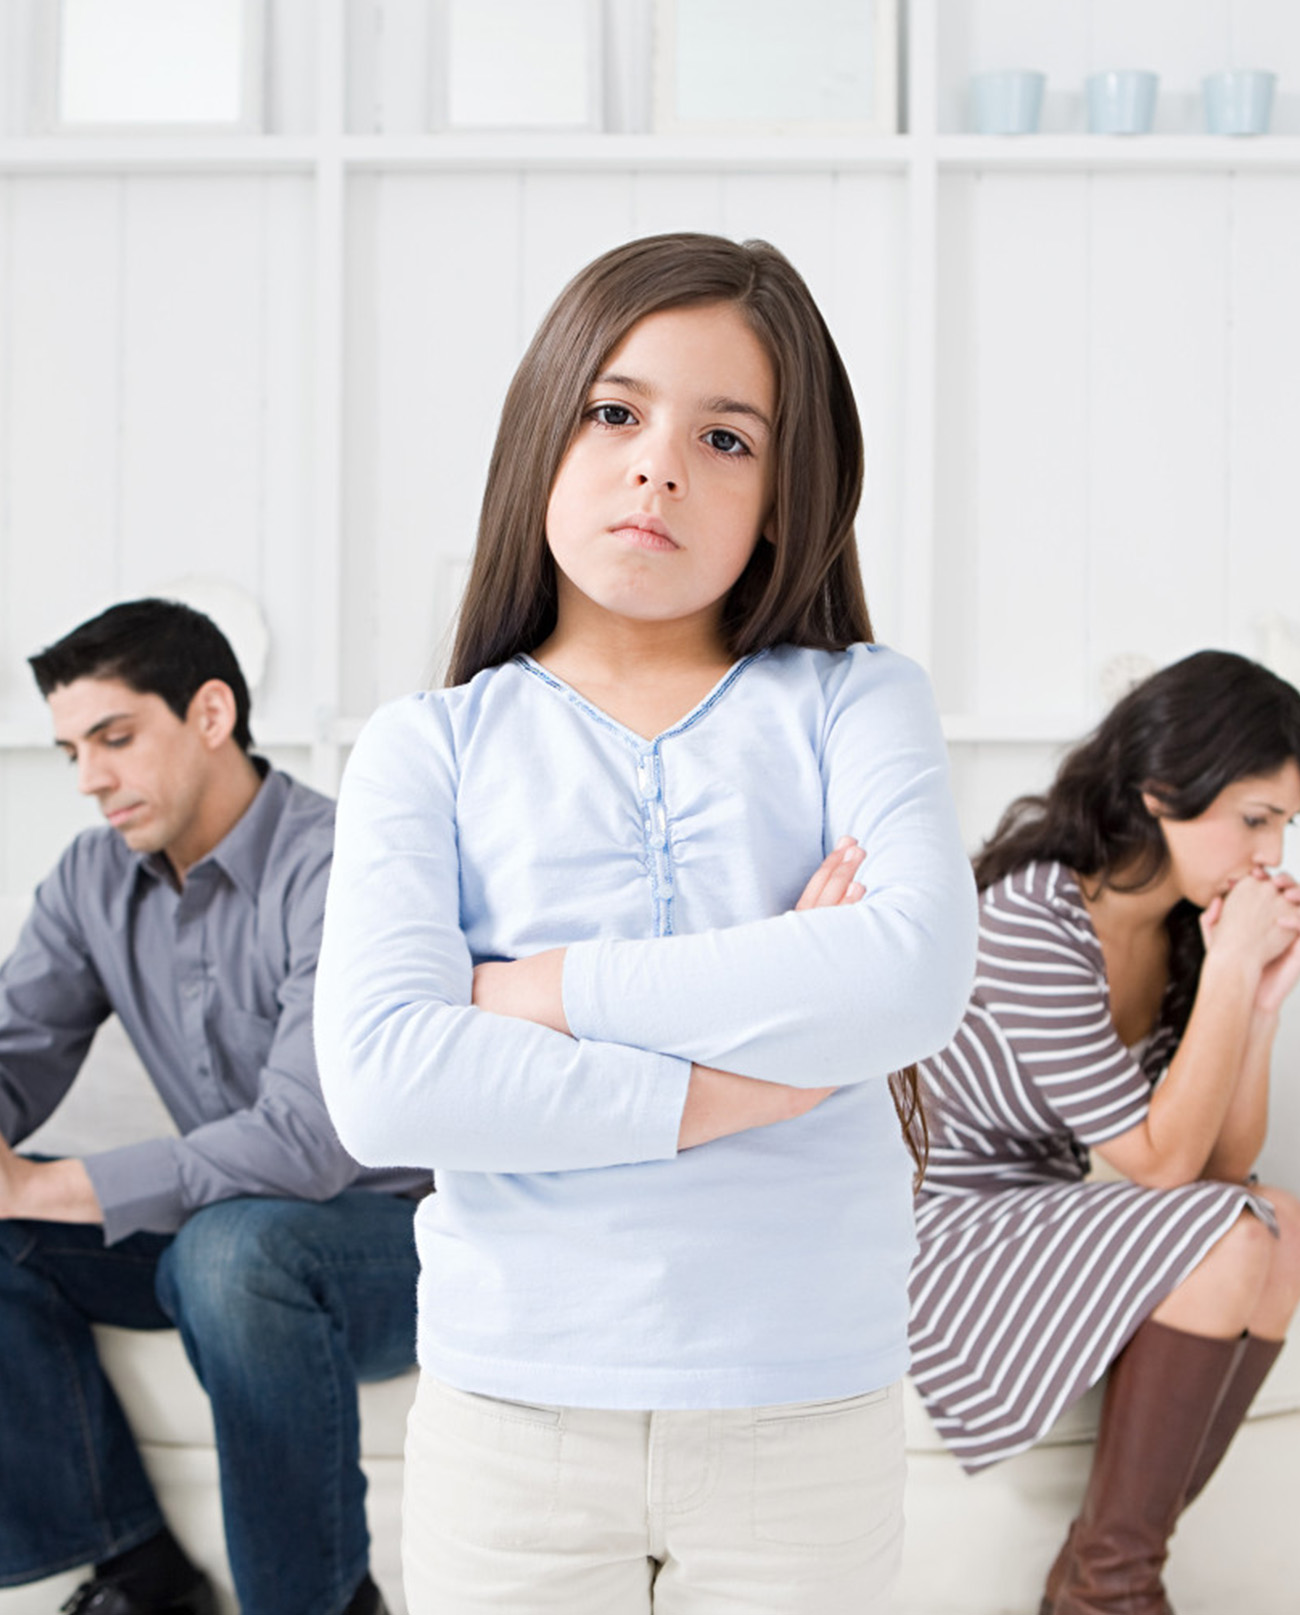 Avocat Divort cu Copii Bucuresti ✔️ Ce se intampla cu copii dupa divort, Situatia Copilului dupa divort